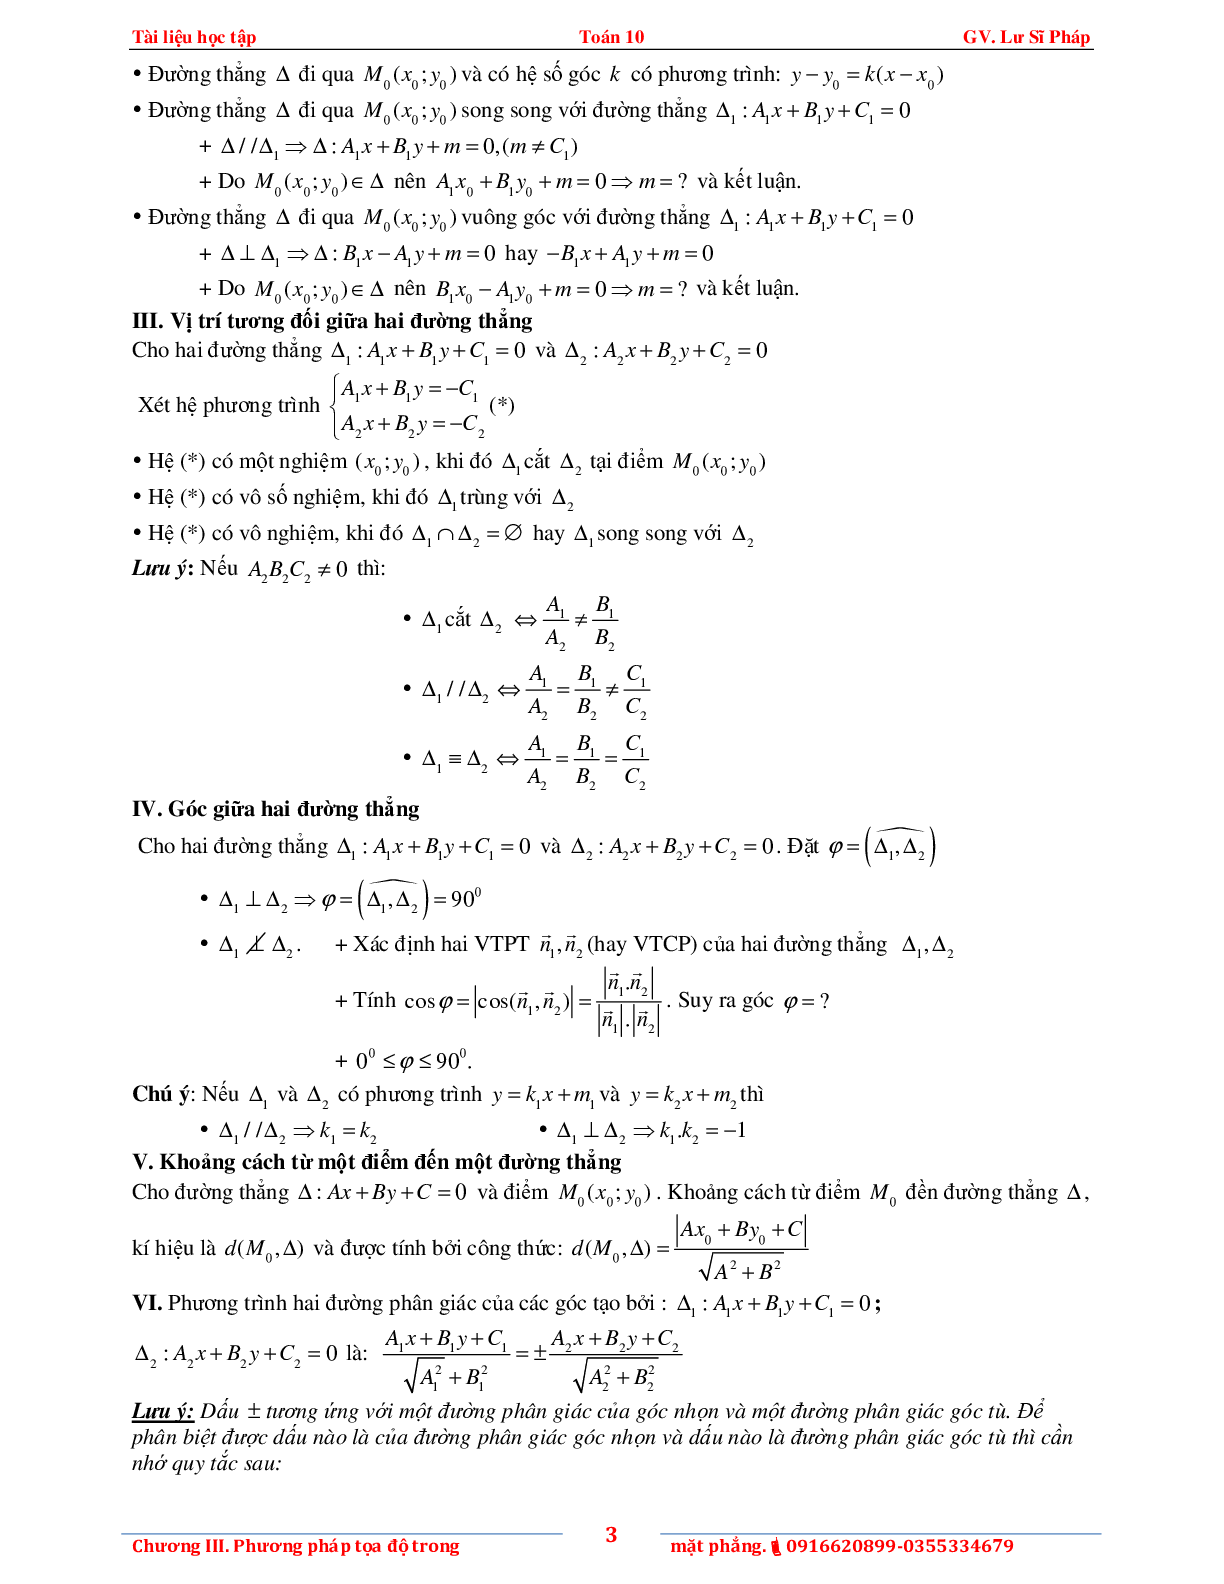 Tài liệu phương pháp tọa độ trong mặt phẳng (trang 7)